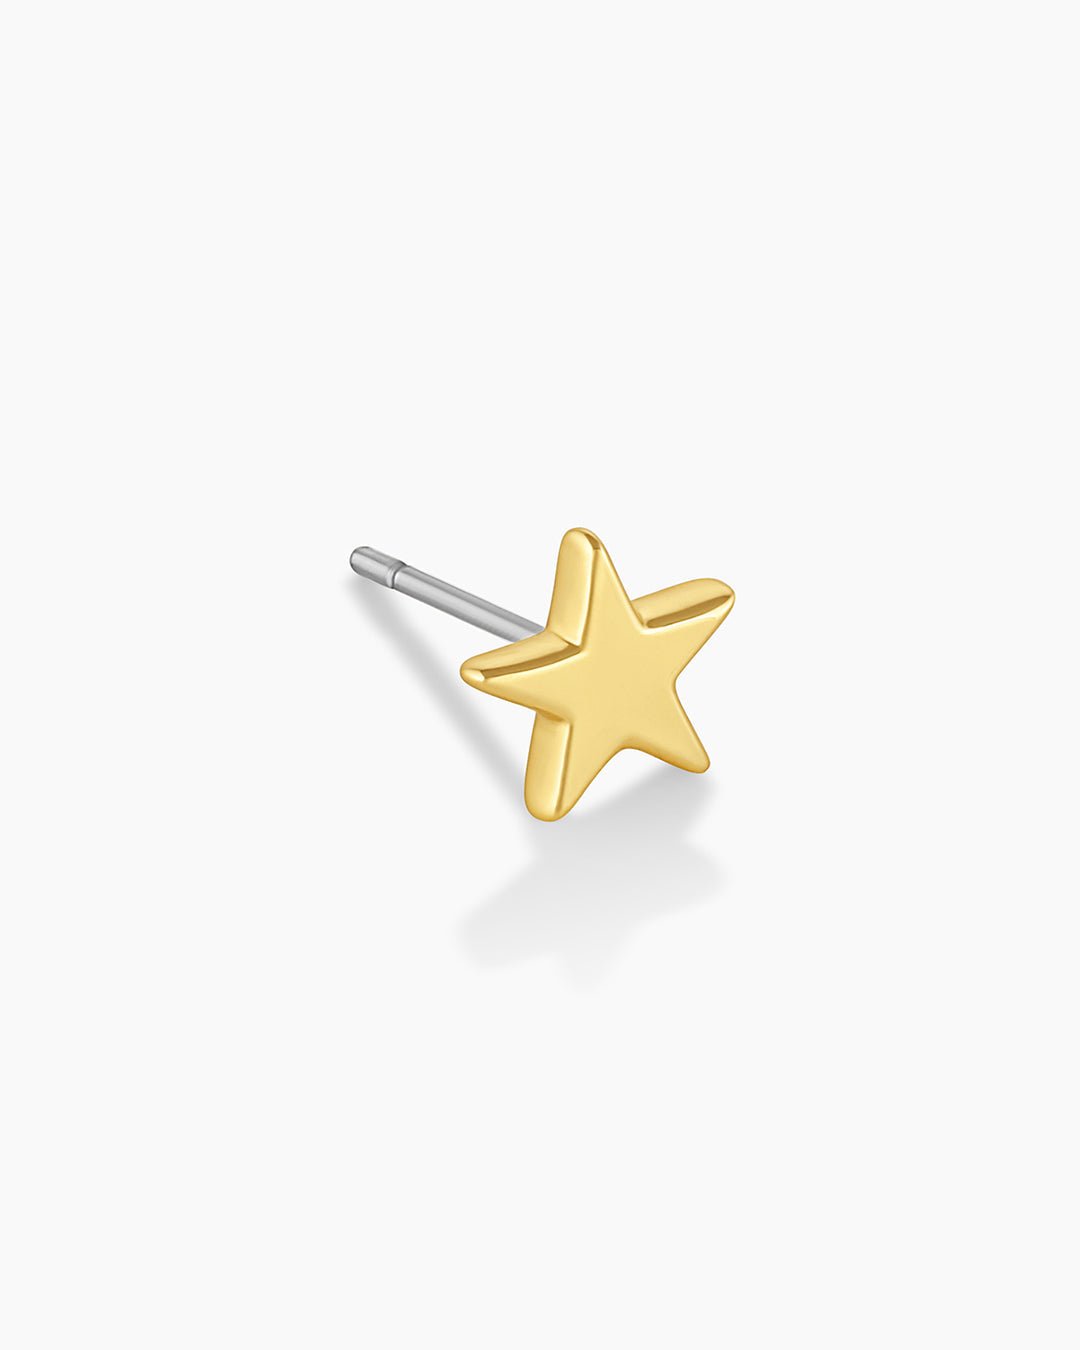 Star Charm Stud Earring in Gold/Star, Women's by Gorjana